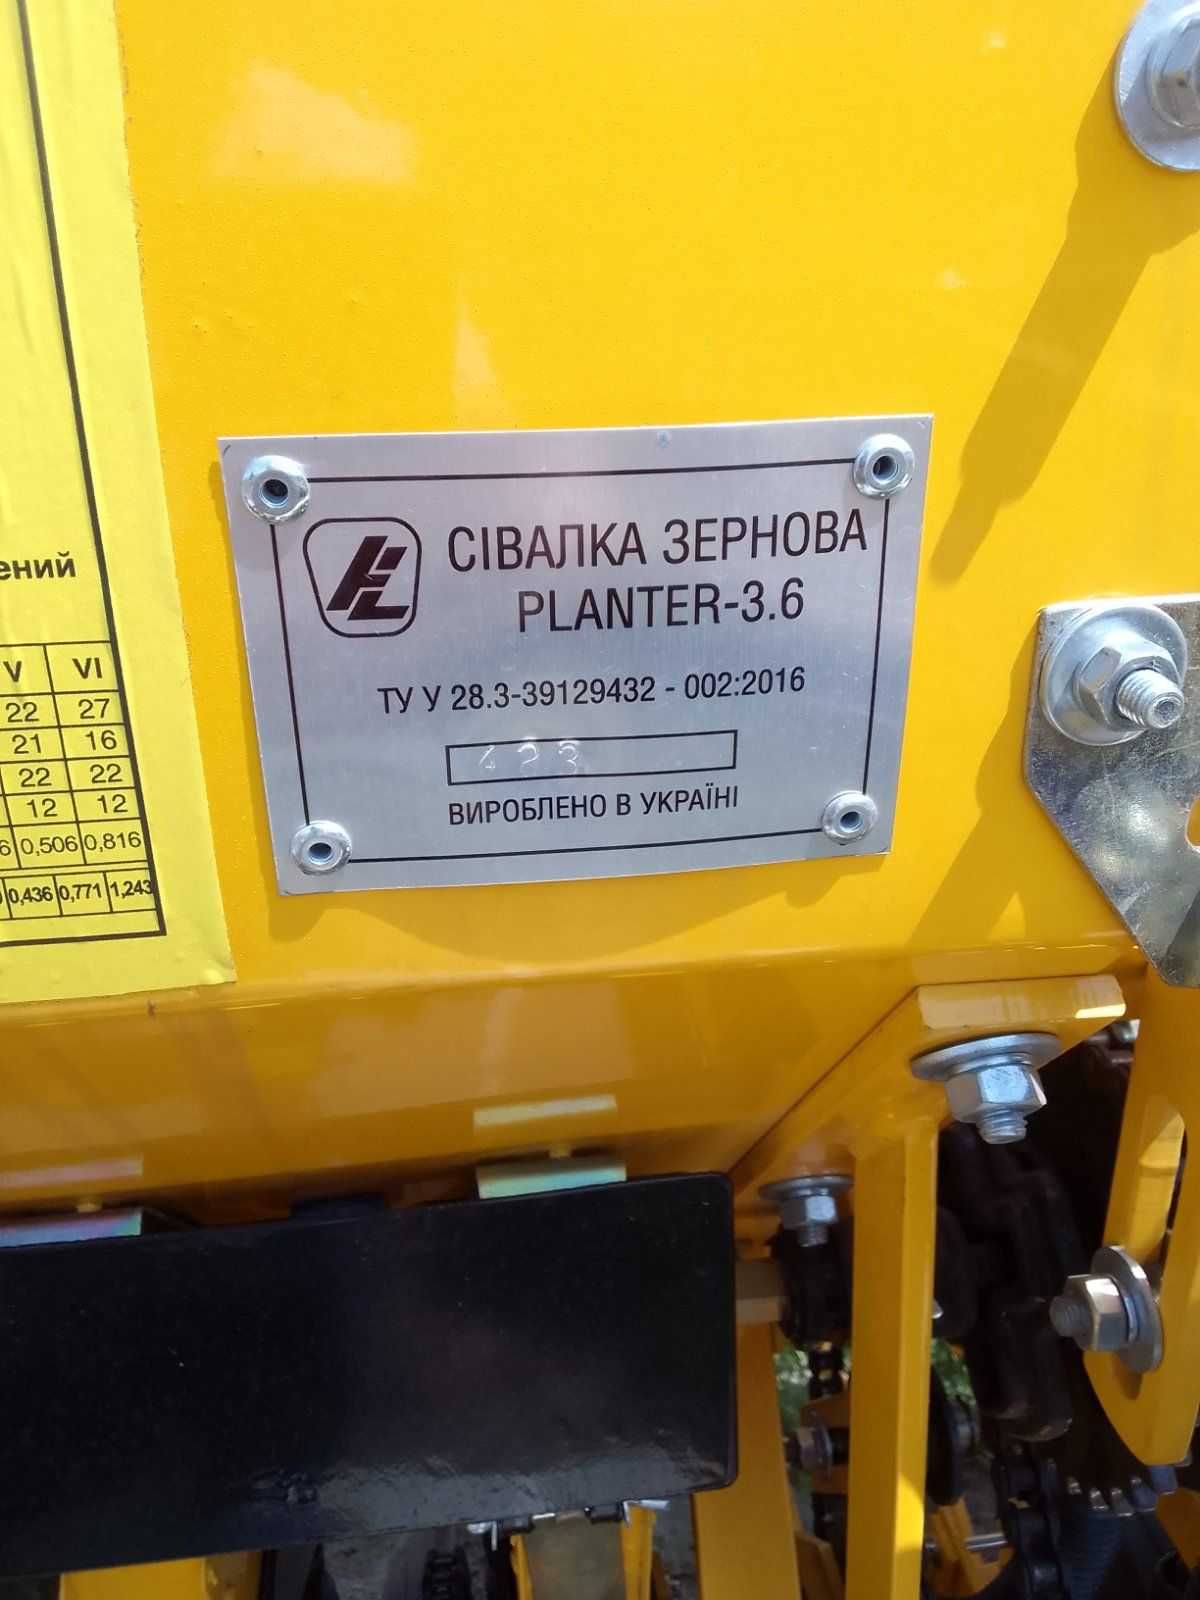 Зерновая сеялка СЗ Planter-3.6 м/р 15 см  от ЗАВОДА!